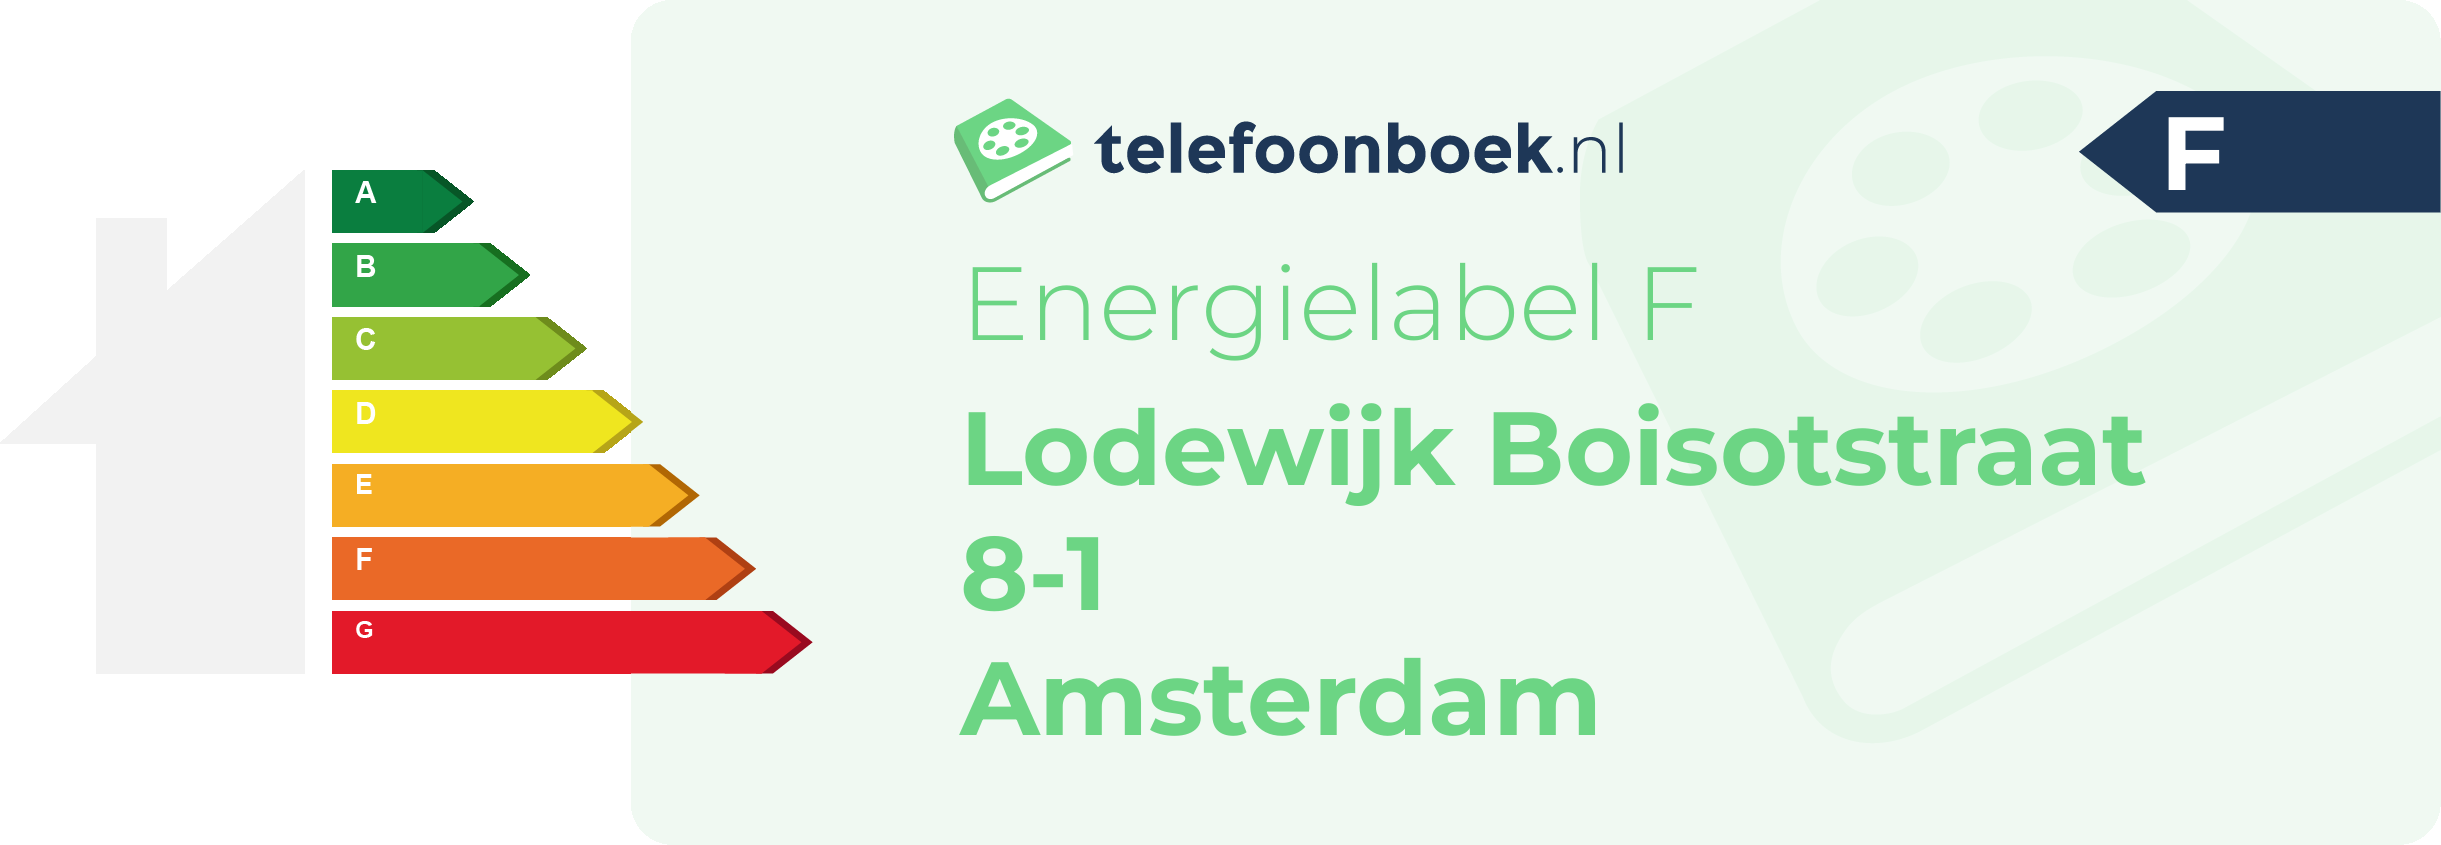 Energielabel Lodewijk Boisotstraat 8-1 Amsterdam